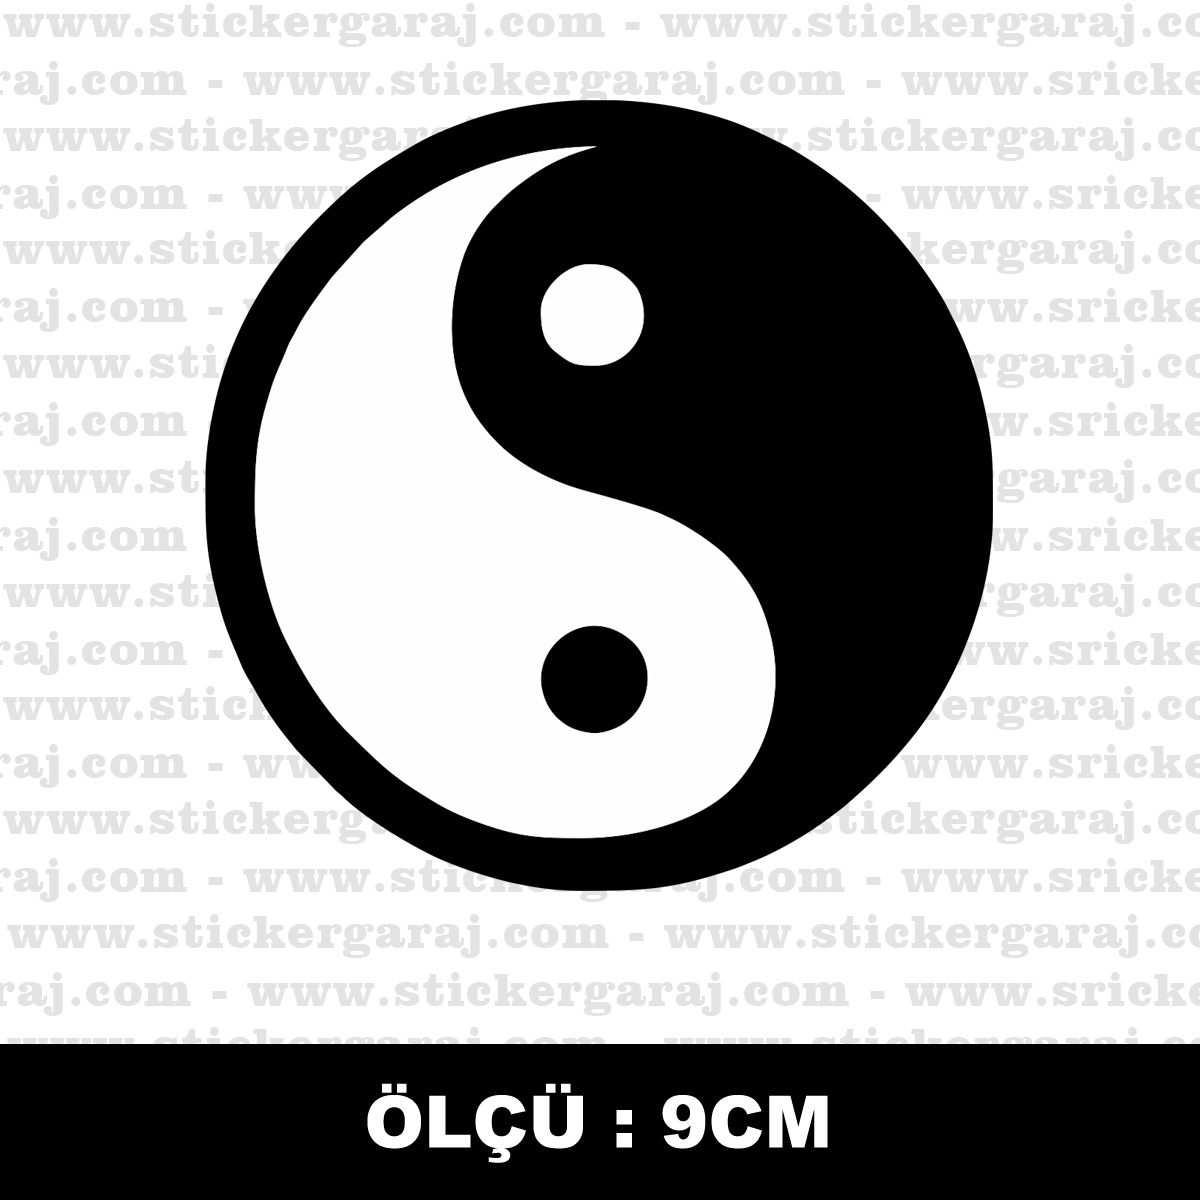 Yin Yang sticker - Yin Yang sticker